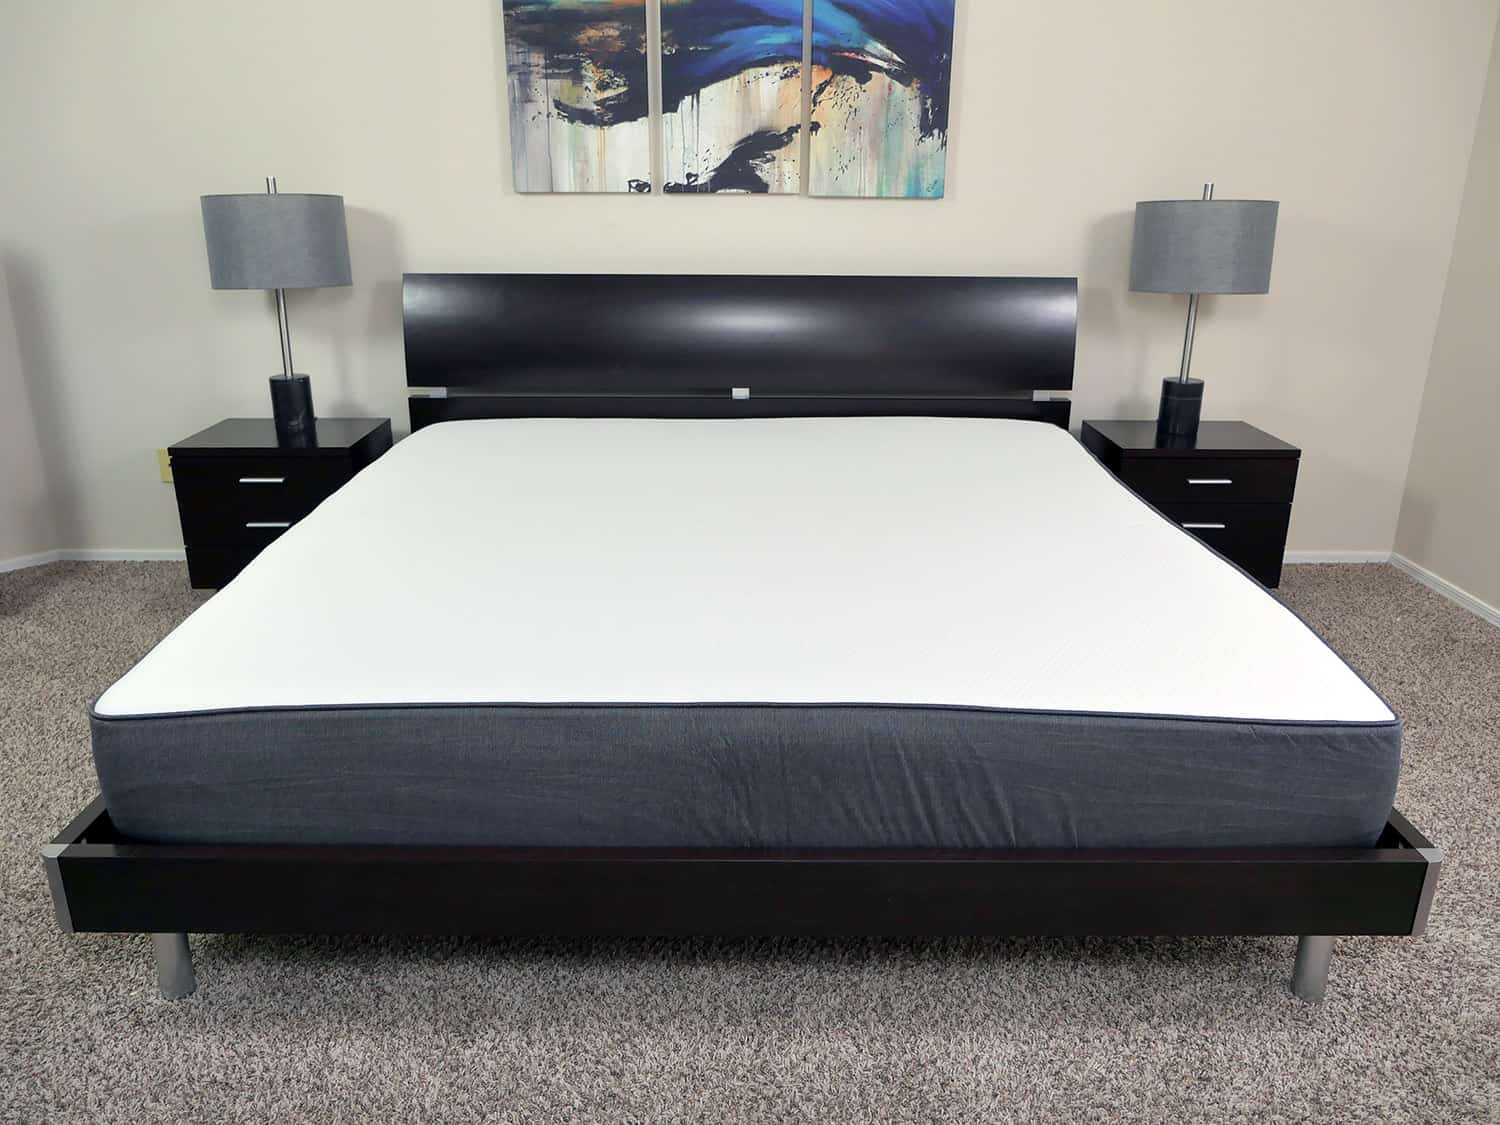 casper king size mattress review